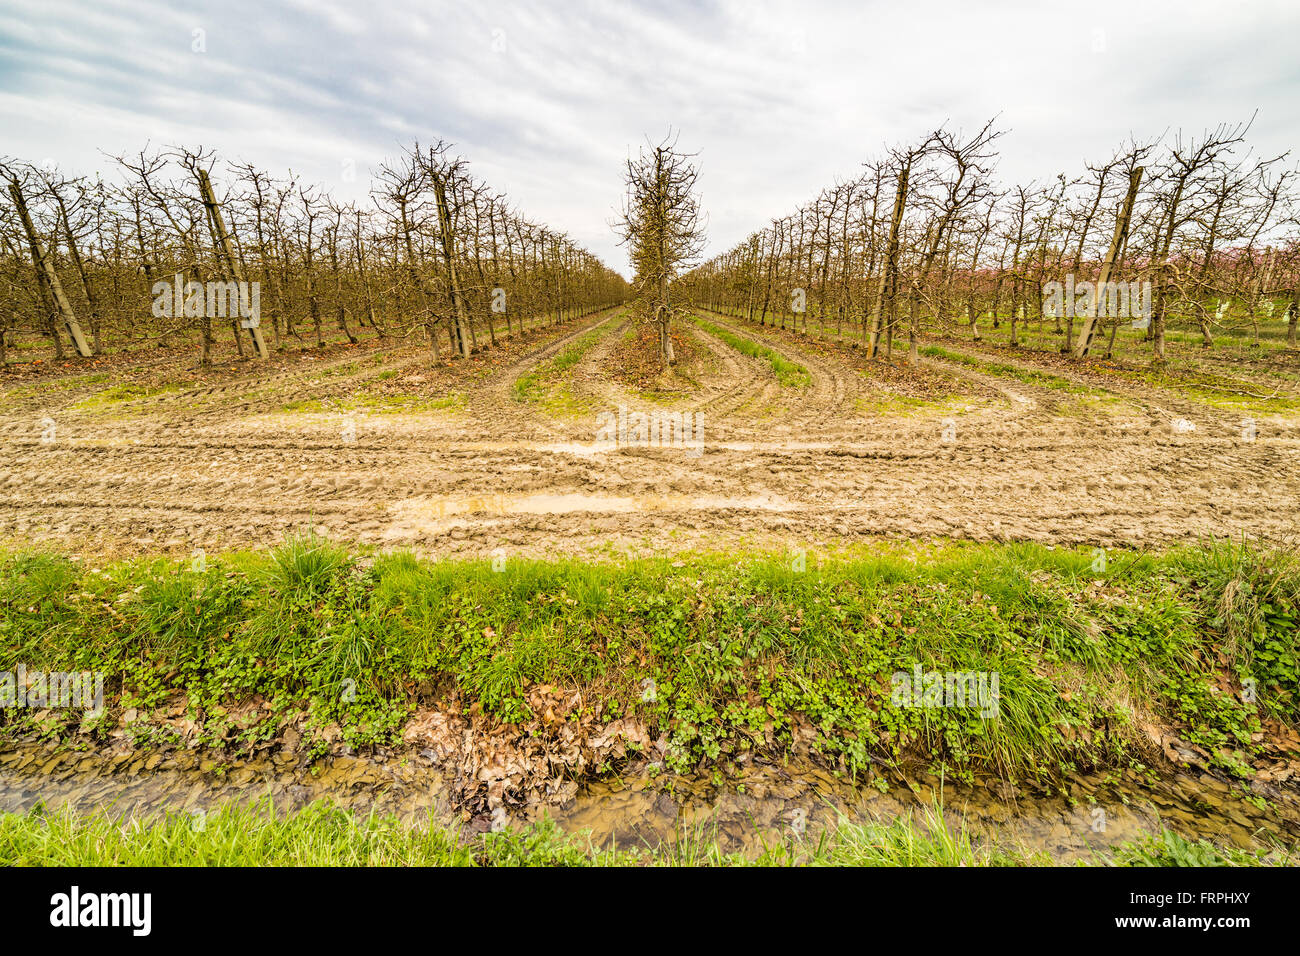 L'agricoltura moderna organizza campi in geometrie regolari di frutteti che preannuncia l'arrivo della primavera con il primo blumi Foto Stock